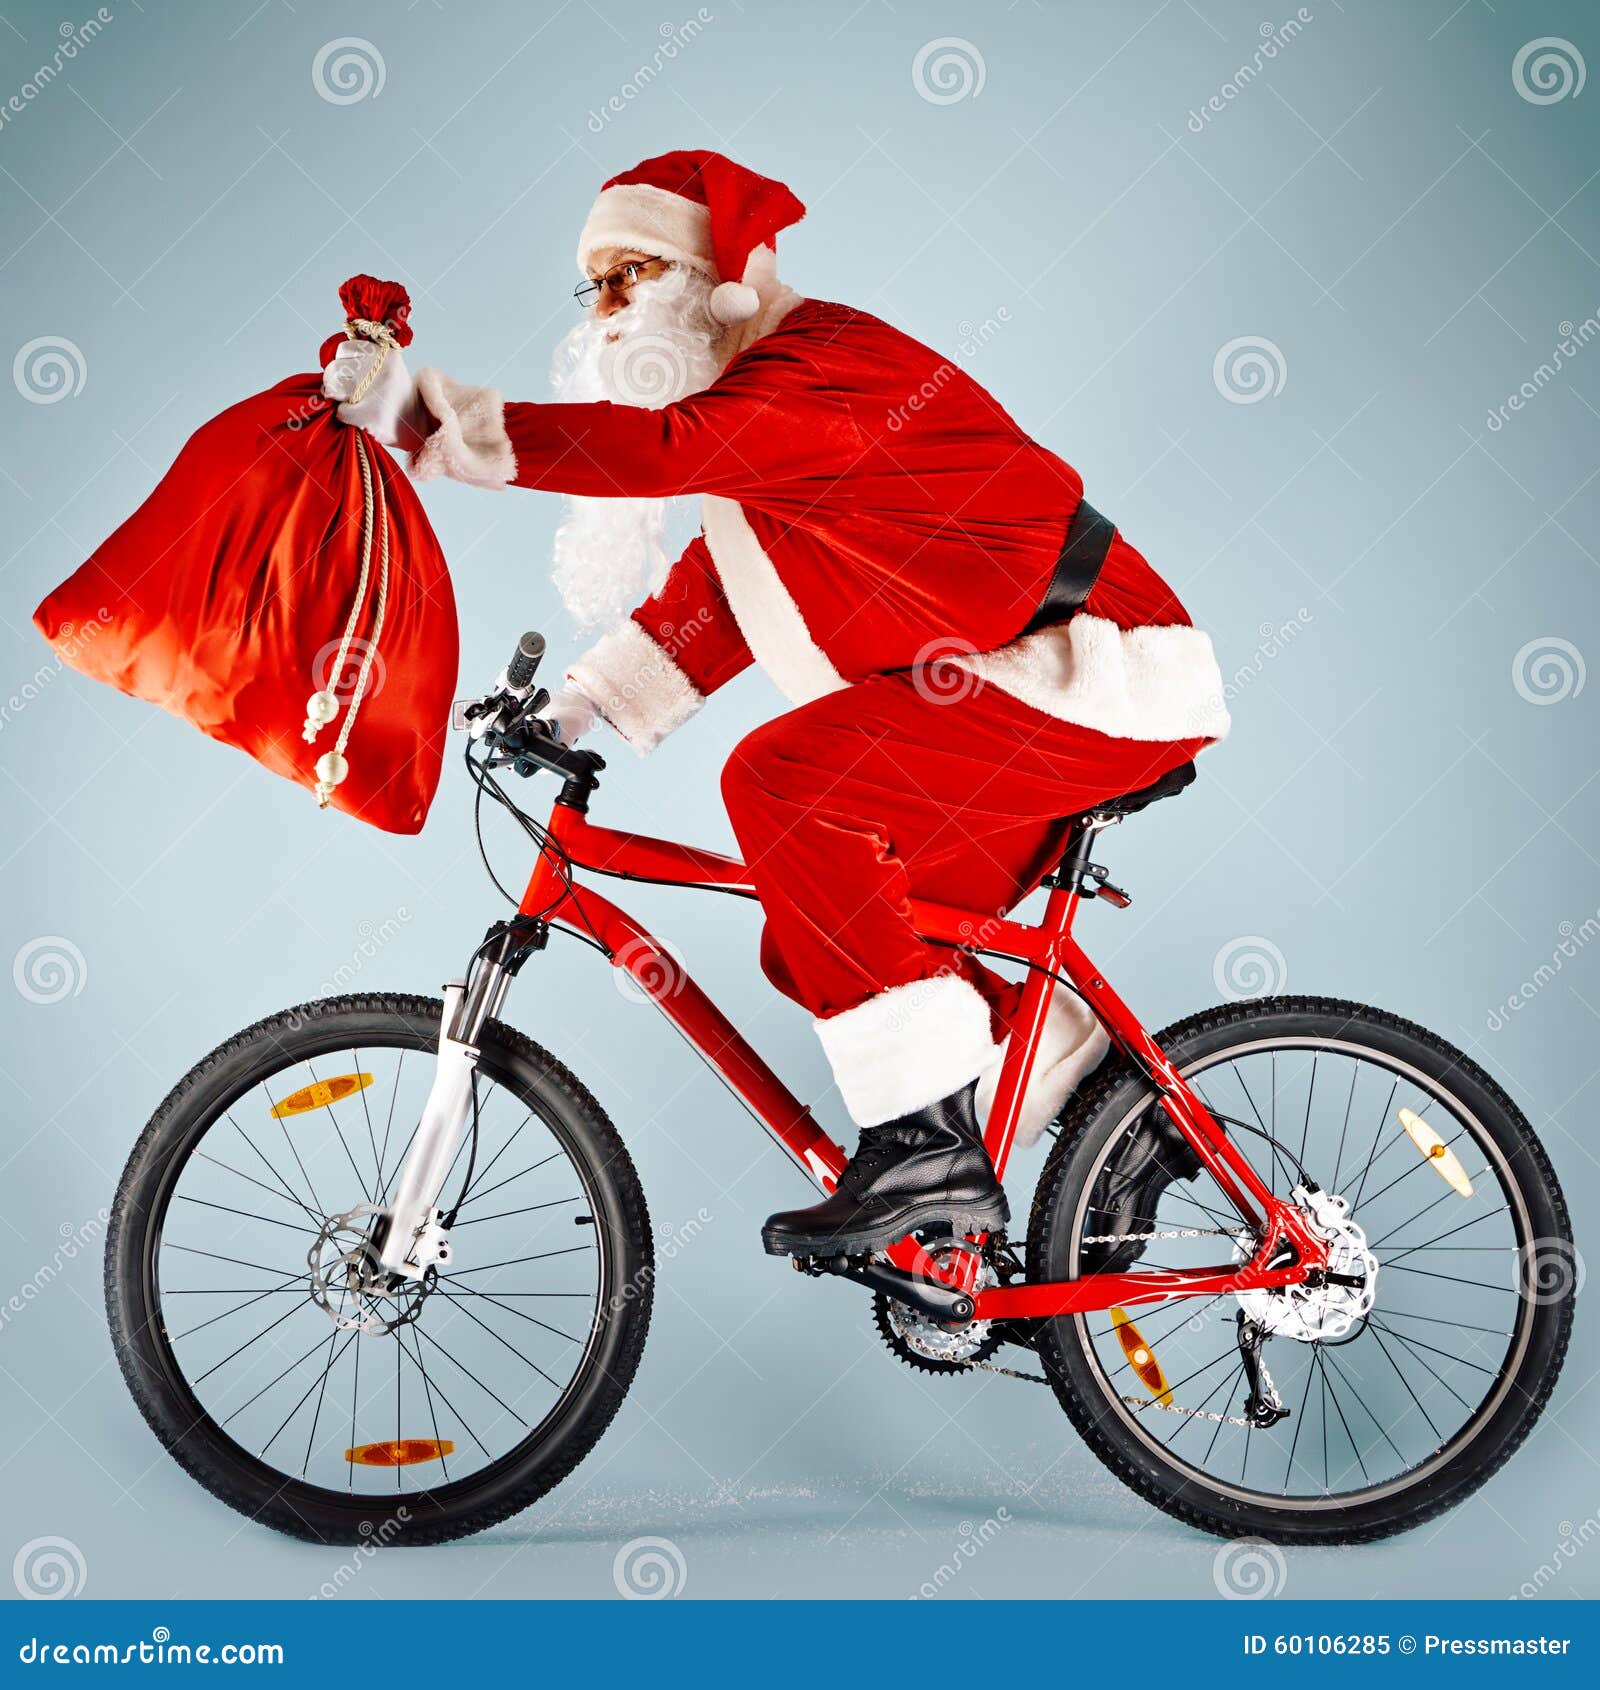 Kerstman Met Rode Zak Op Fiets Stock Afbeelding - Image Of Fiets, Traditie:  60106285